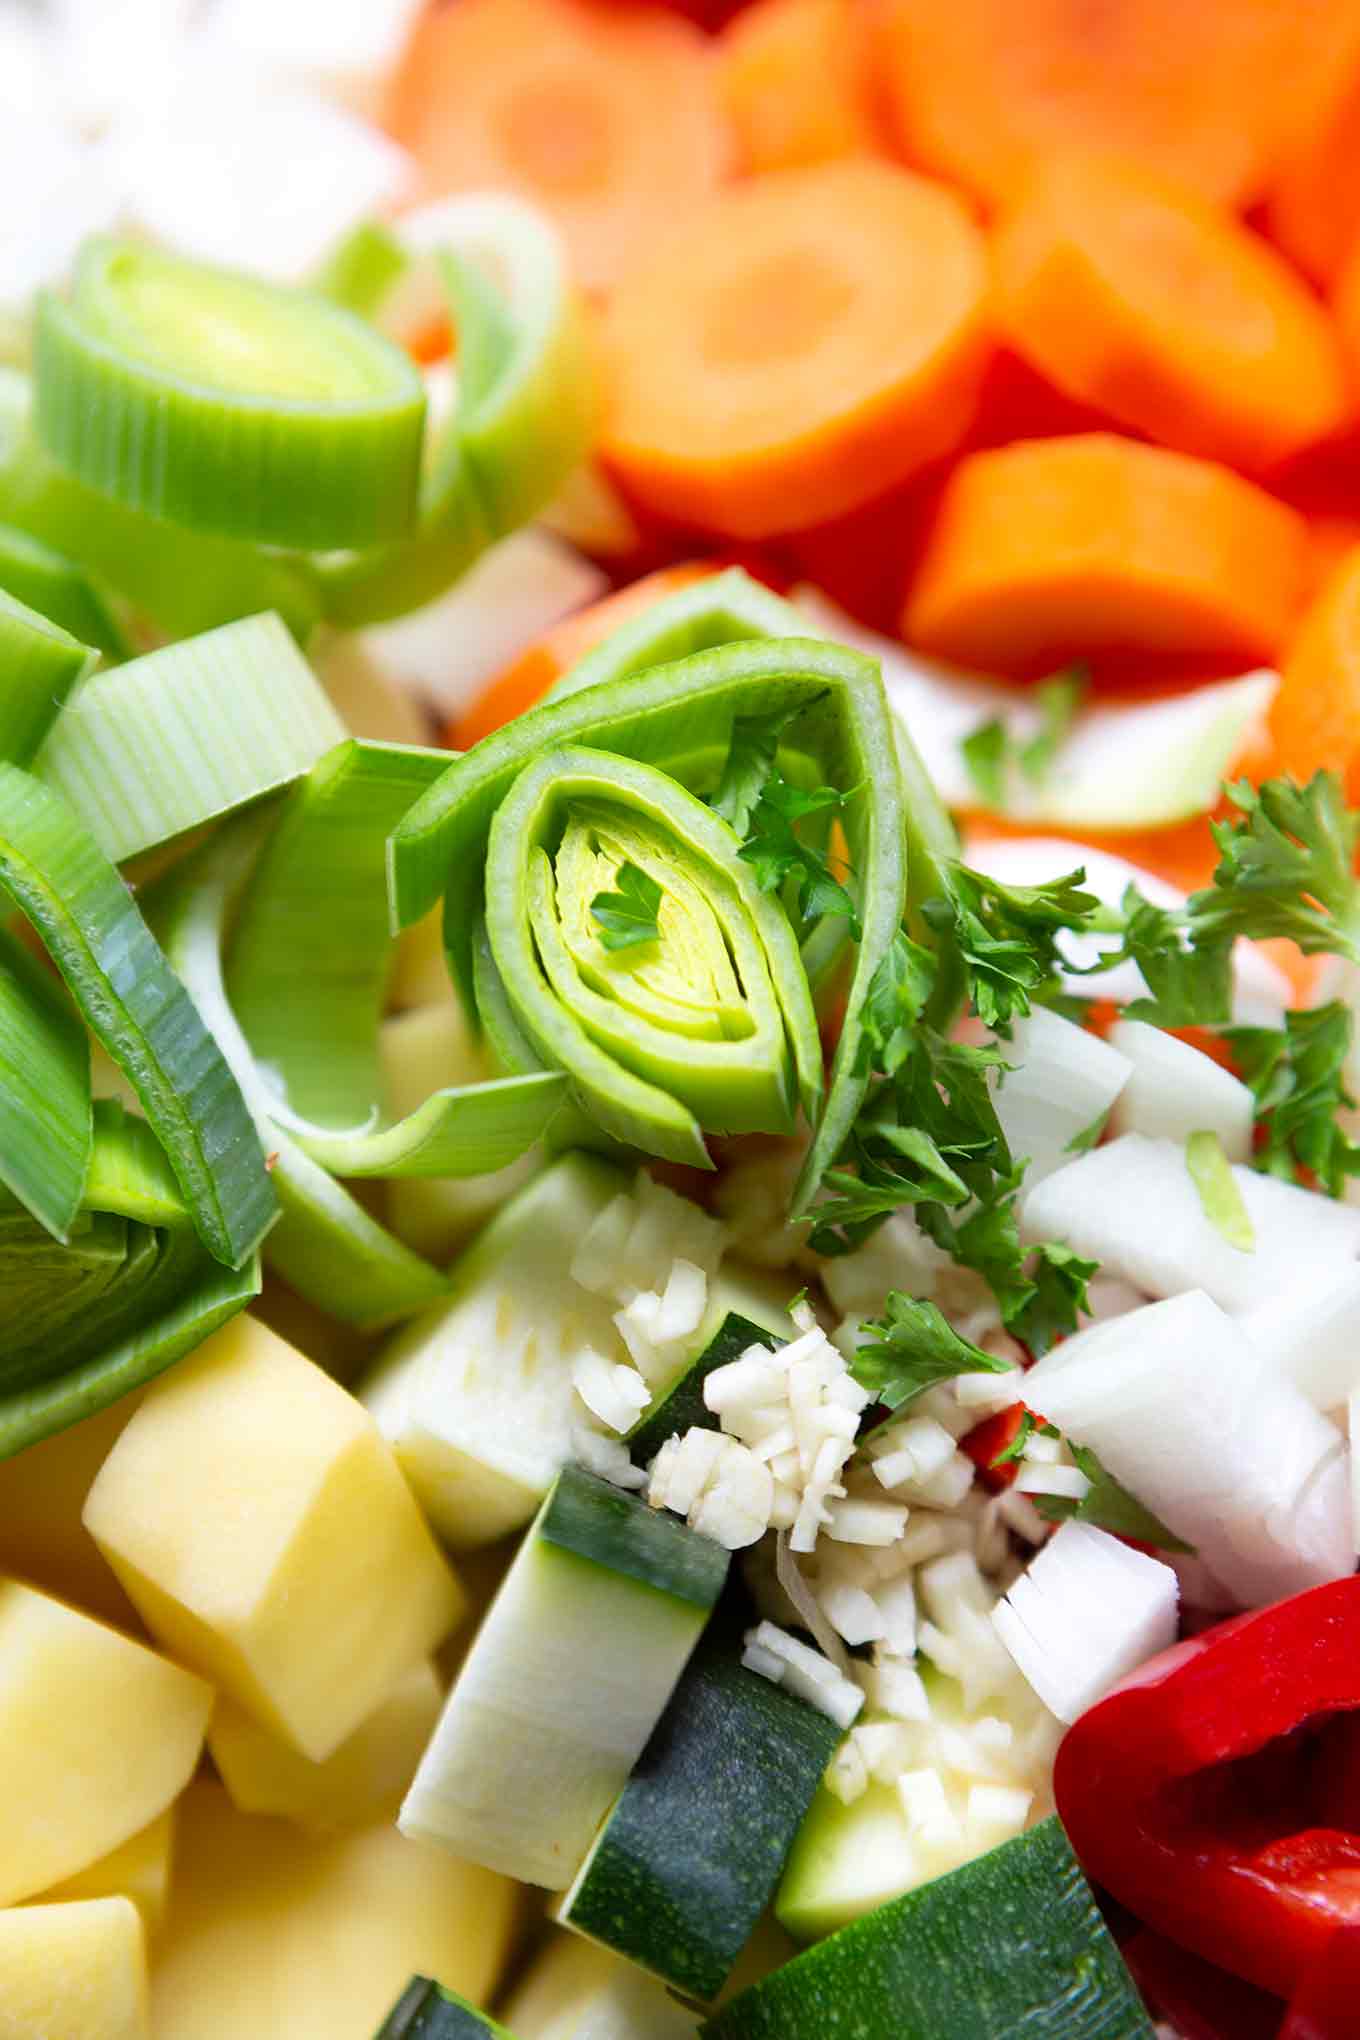 Herzhafte Gemüsesuppe. Dieses deftige 30-Minuten Rezept ist gesund, kalorienarm und super einfach! - Kochkarussell.com #gemüsesuppe #herzhaft #einfach #kochkarussell